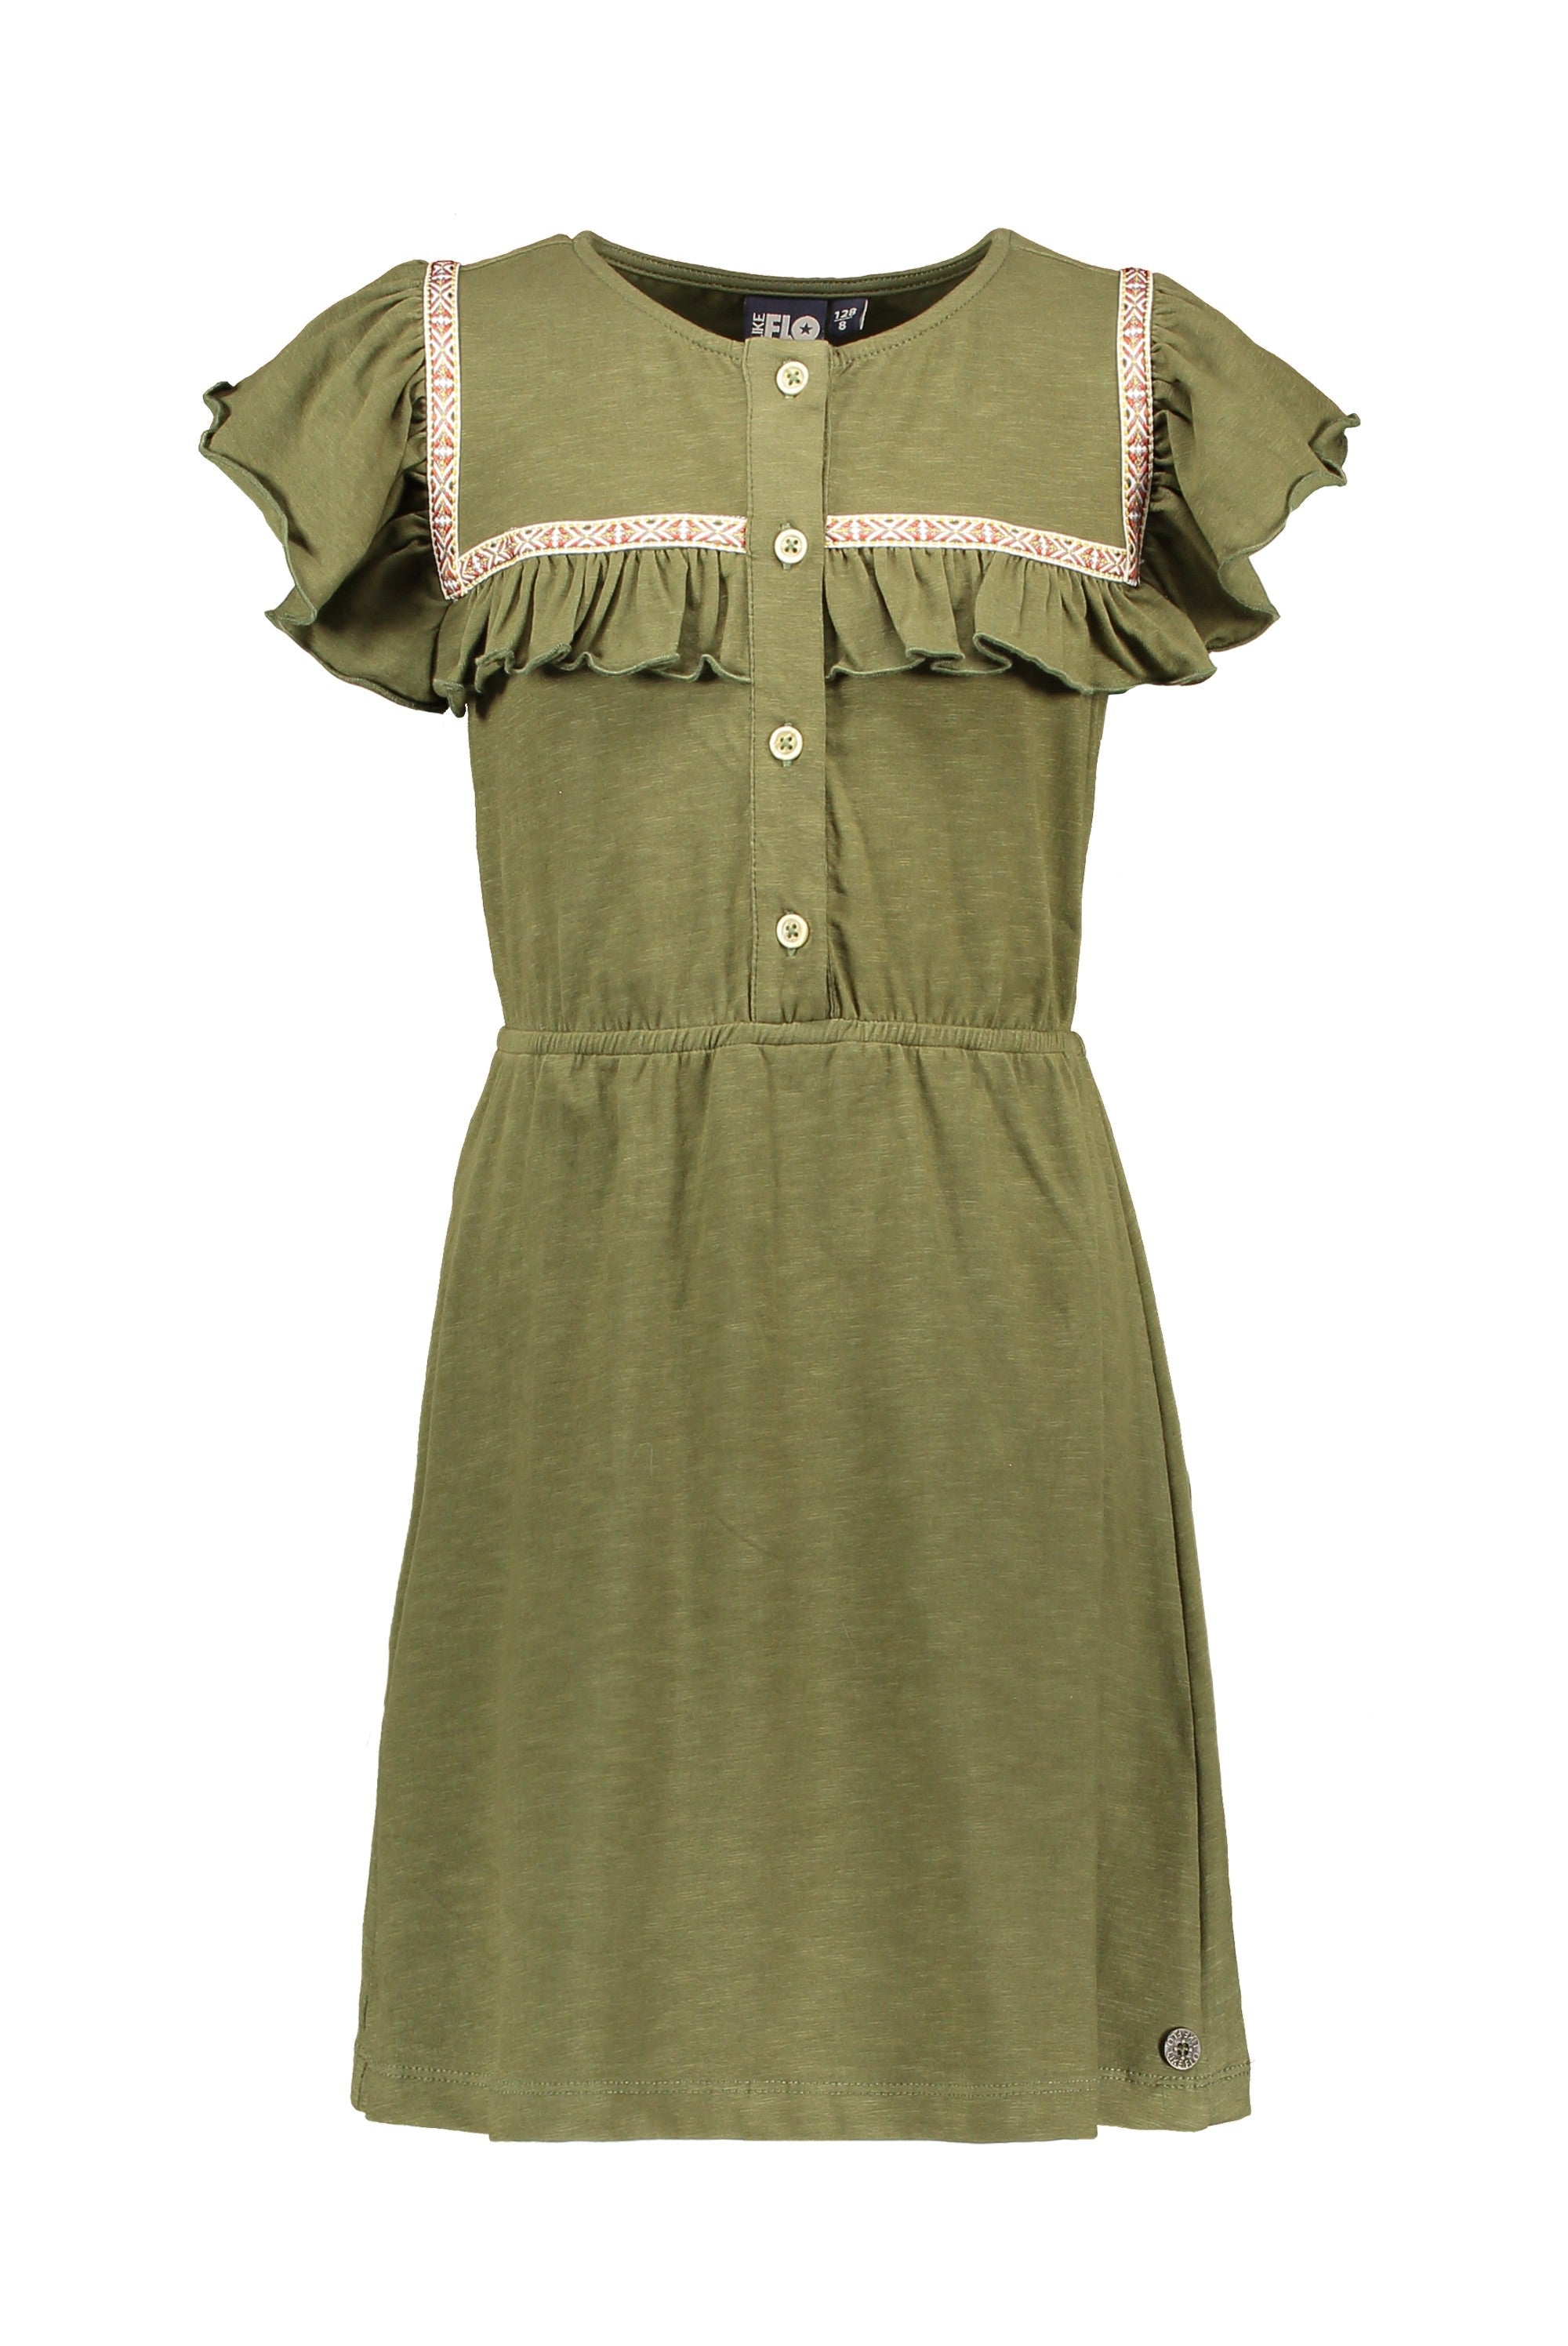 Meisjes Jersey Fancy Ruffle Dress van Like Flo in de kleur Olive in maat 152.